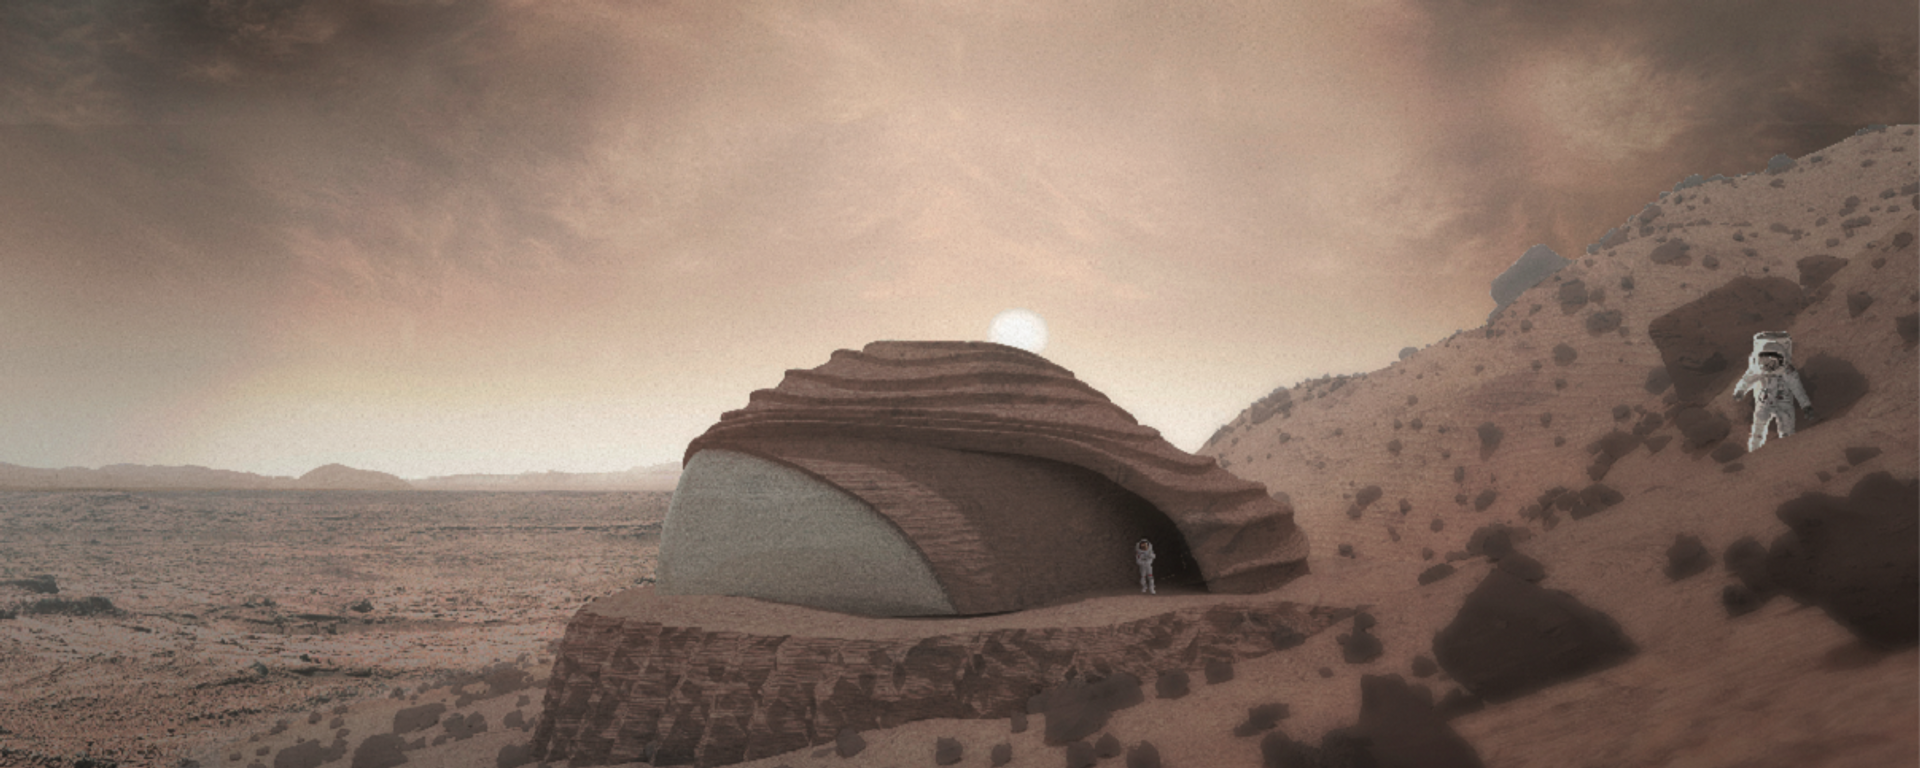 Proyecto de vivienda marciana diseñada por José Miguel Armijo - Sputnik Mundo, 1920, 02.04.2021